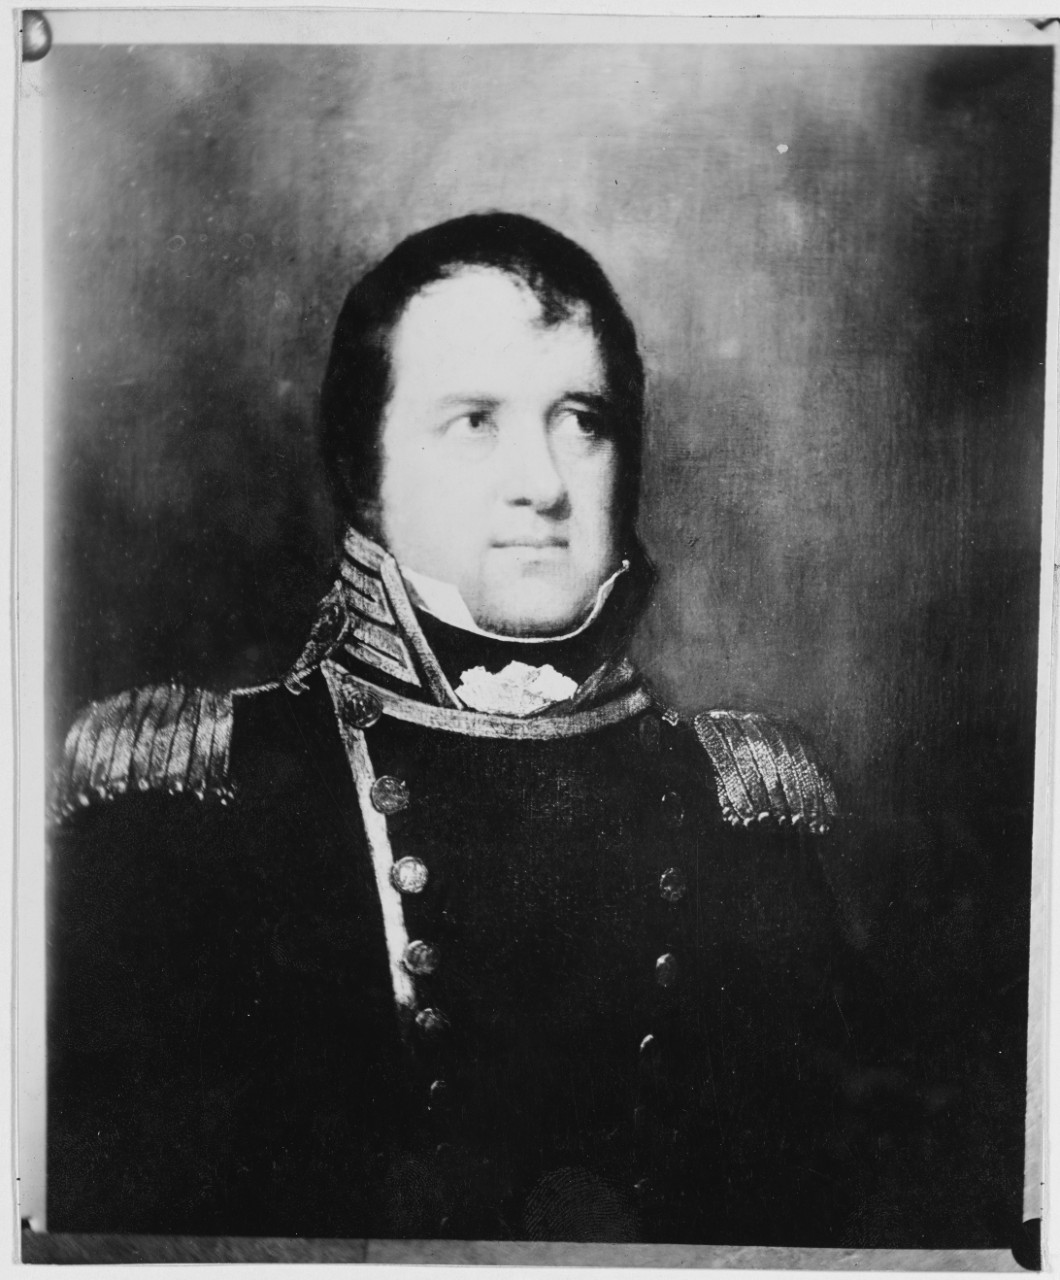 Captain Samuel Evans, USN